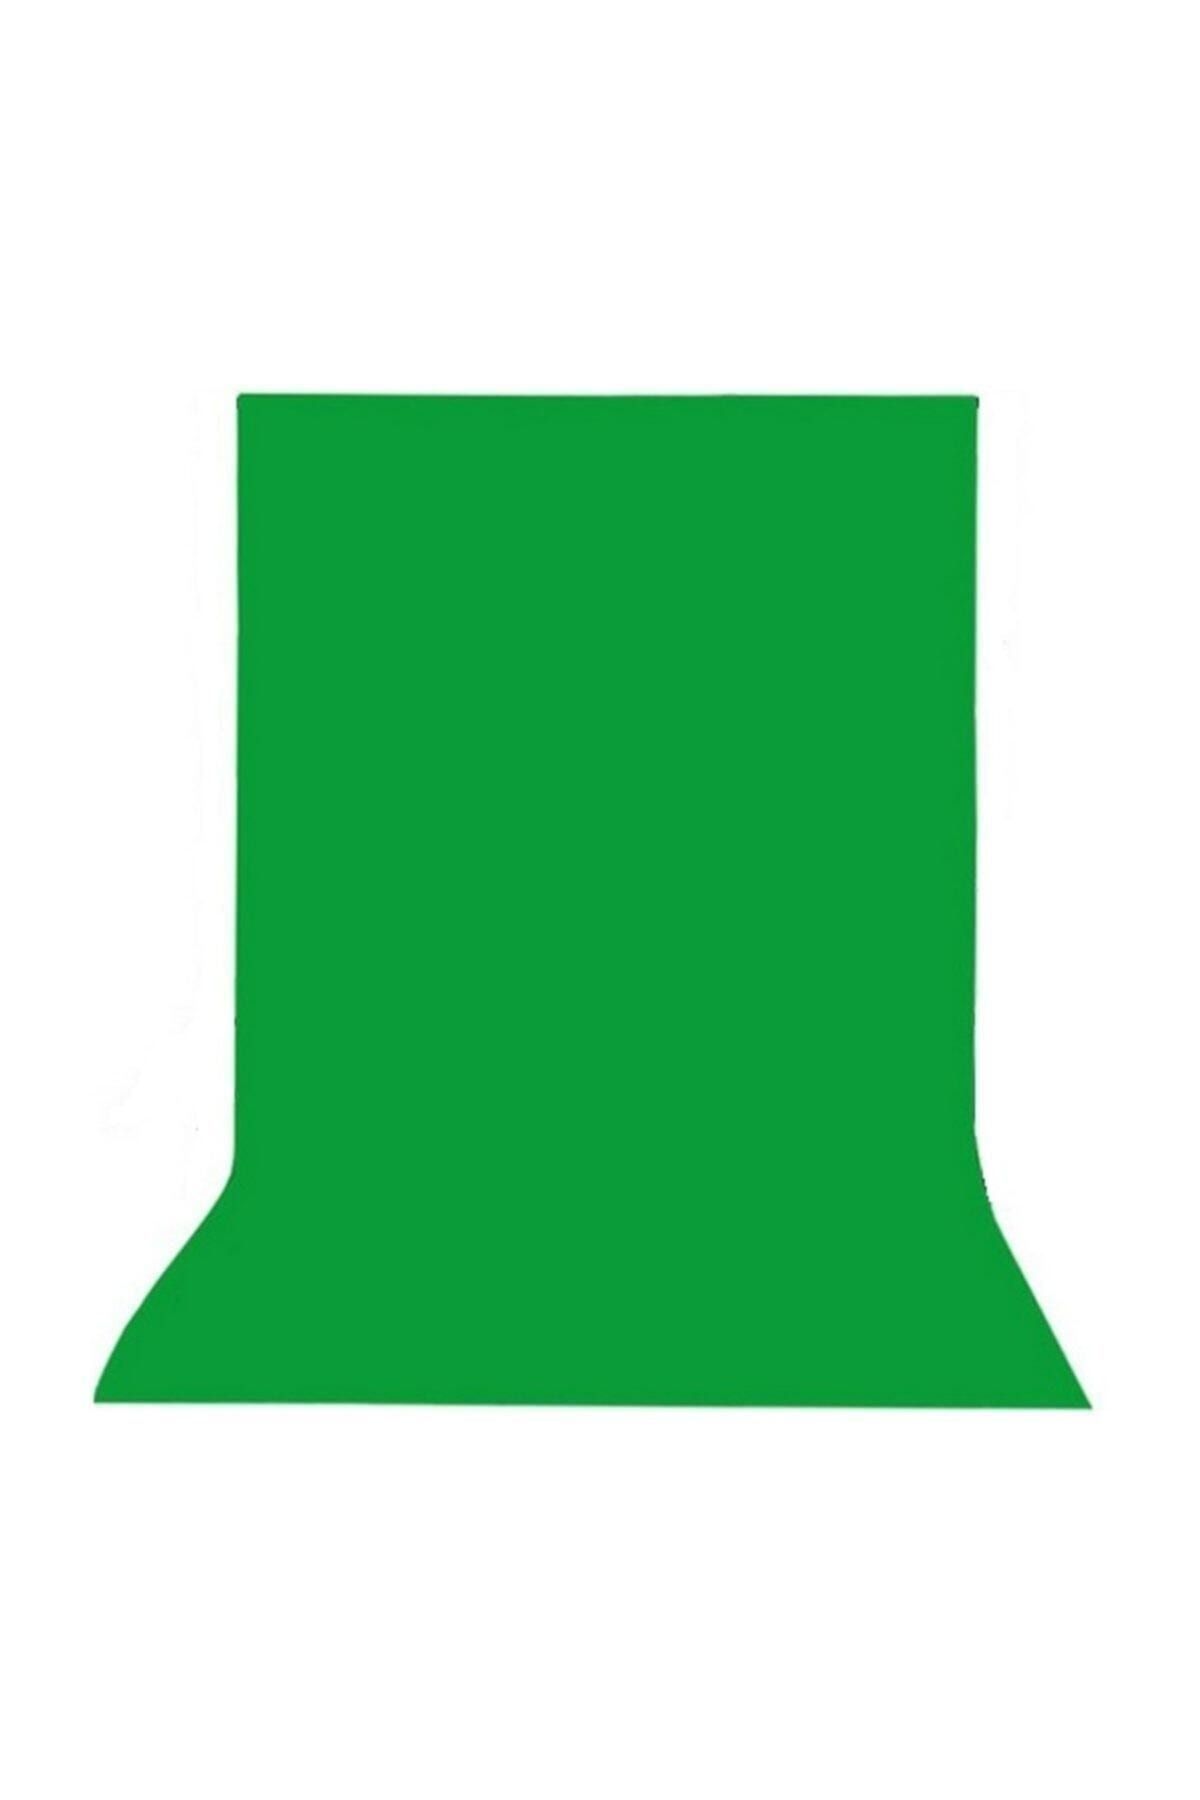 Efsane 200 X 160 Cm Greenbox Chromakey - Green Screen- Yeşil Fon Perde Kumaş